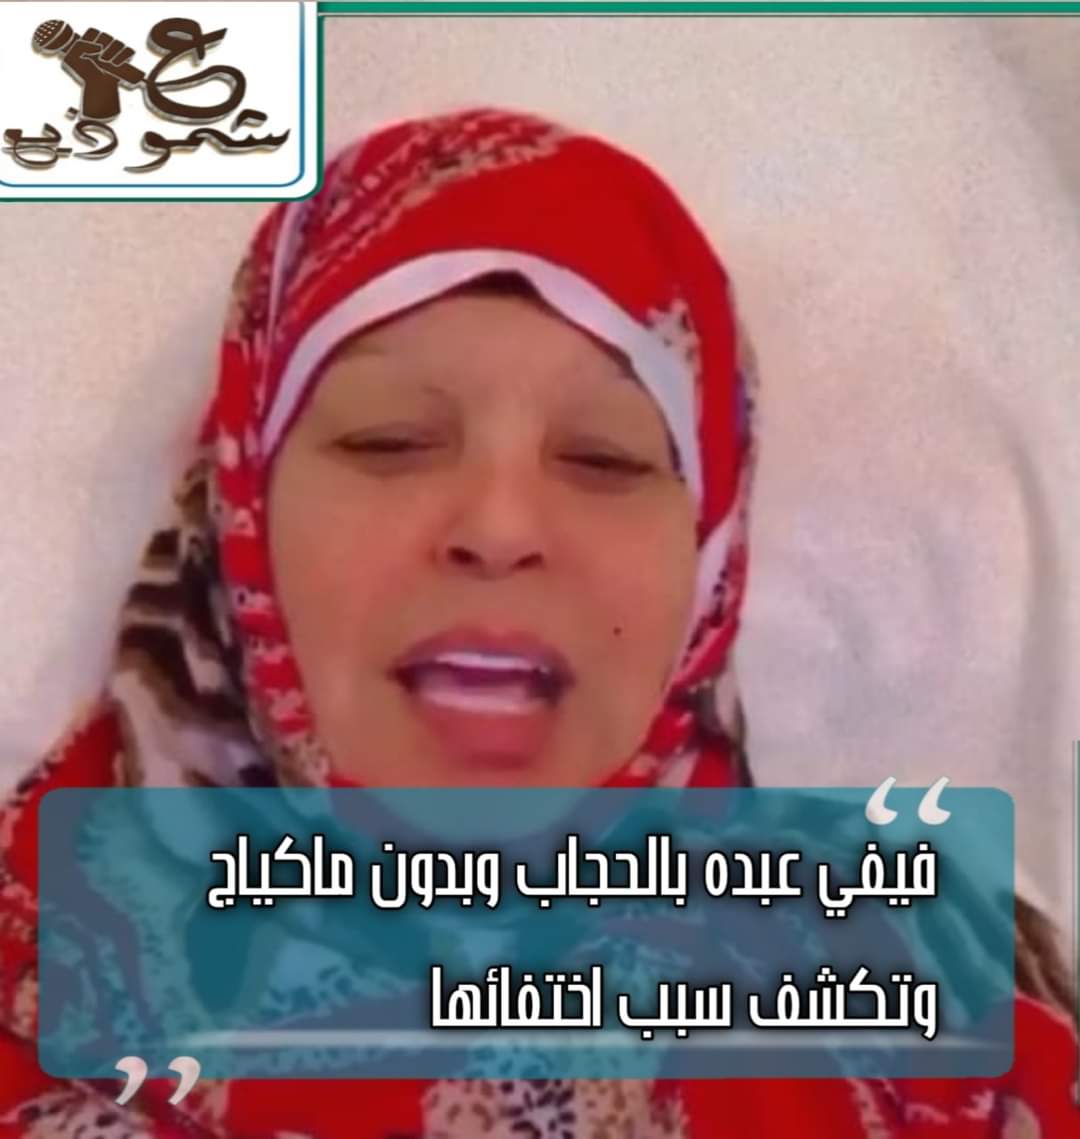 فيفي عبده بالحجاب وبدون ماكياج وتكشف سبب اختفائها